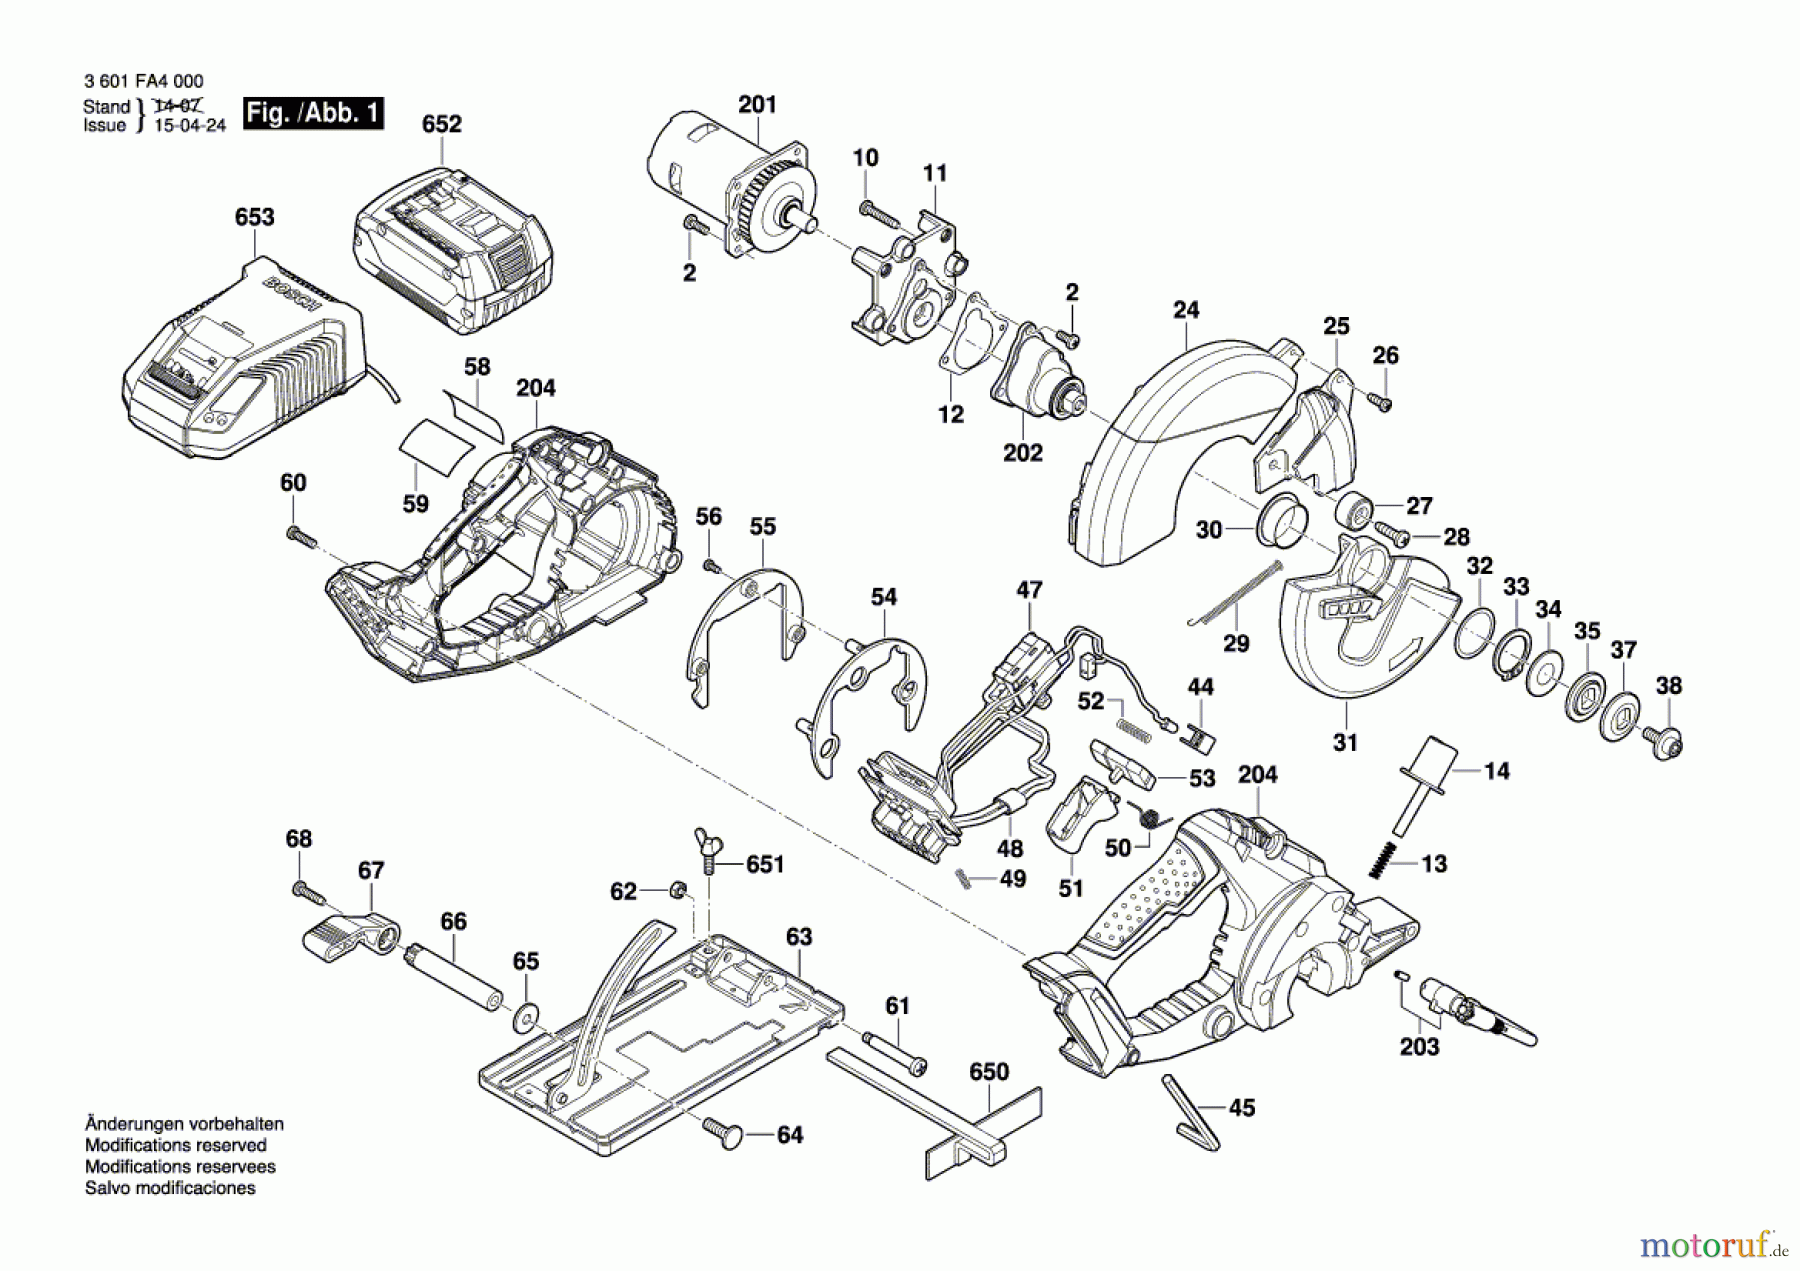  Bosch Werkzeug Kreissäge GKM 18 V-LI Seite 1